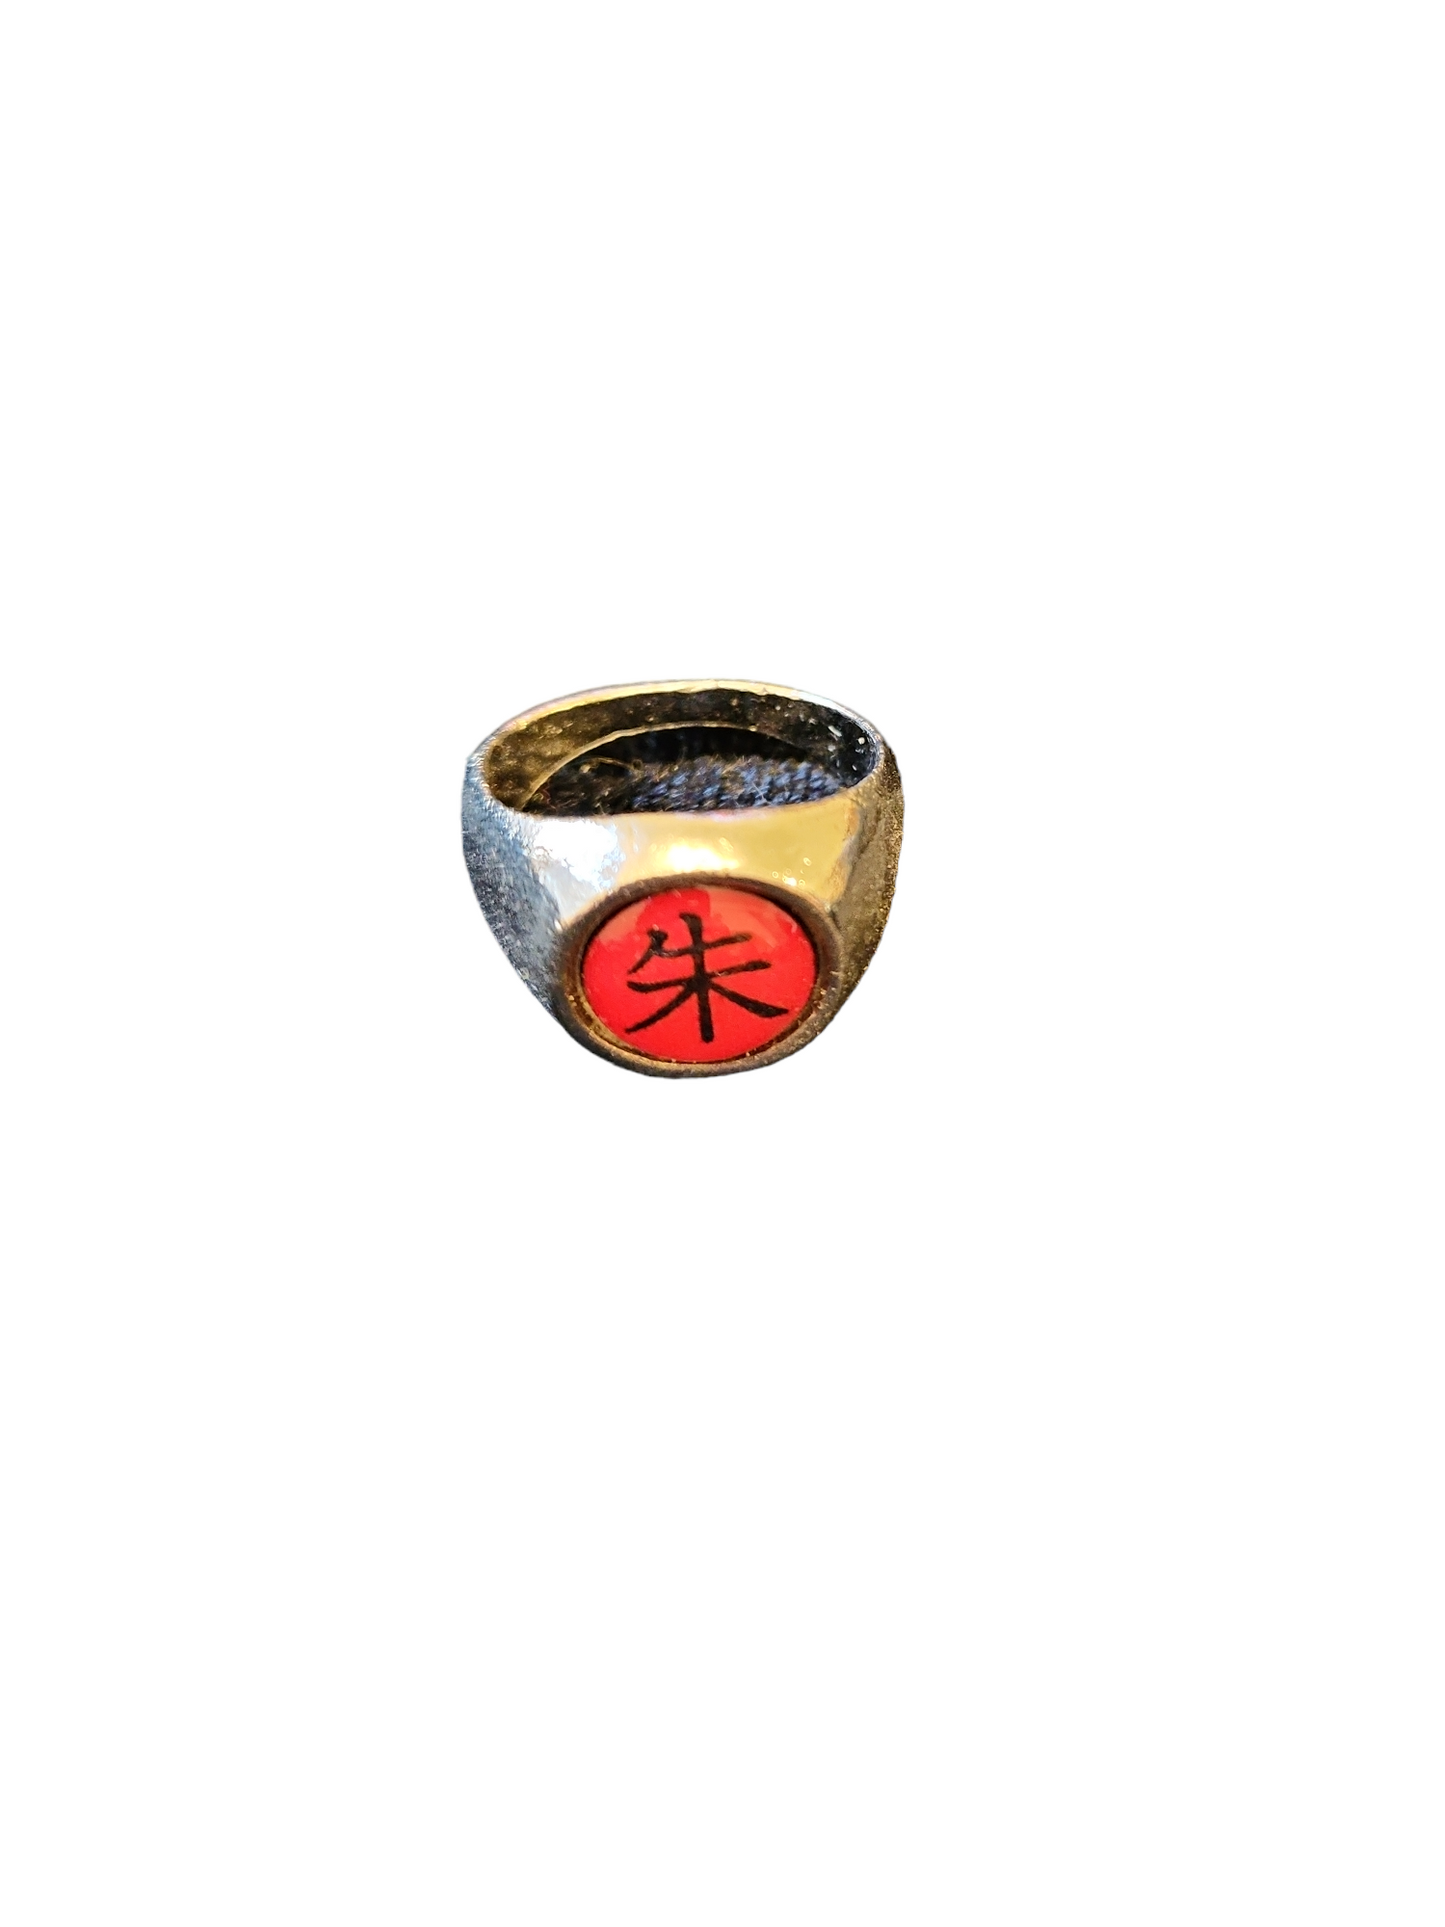 que significa el anillo de itachi｜Búsqueda de TikTok